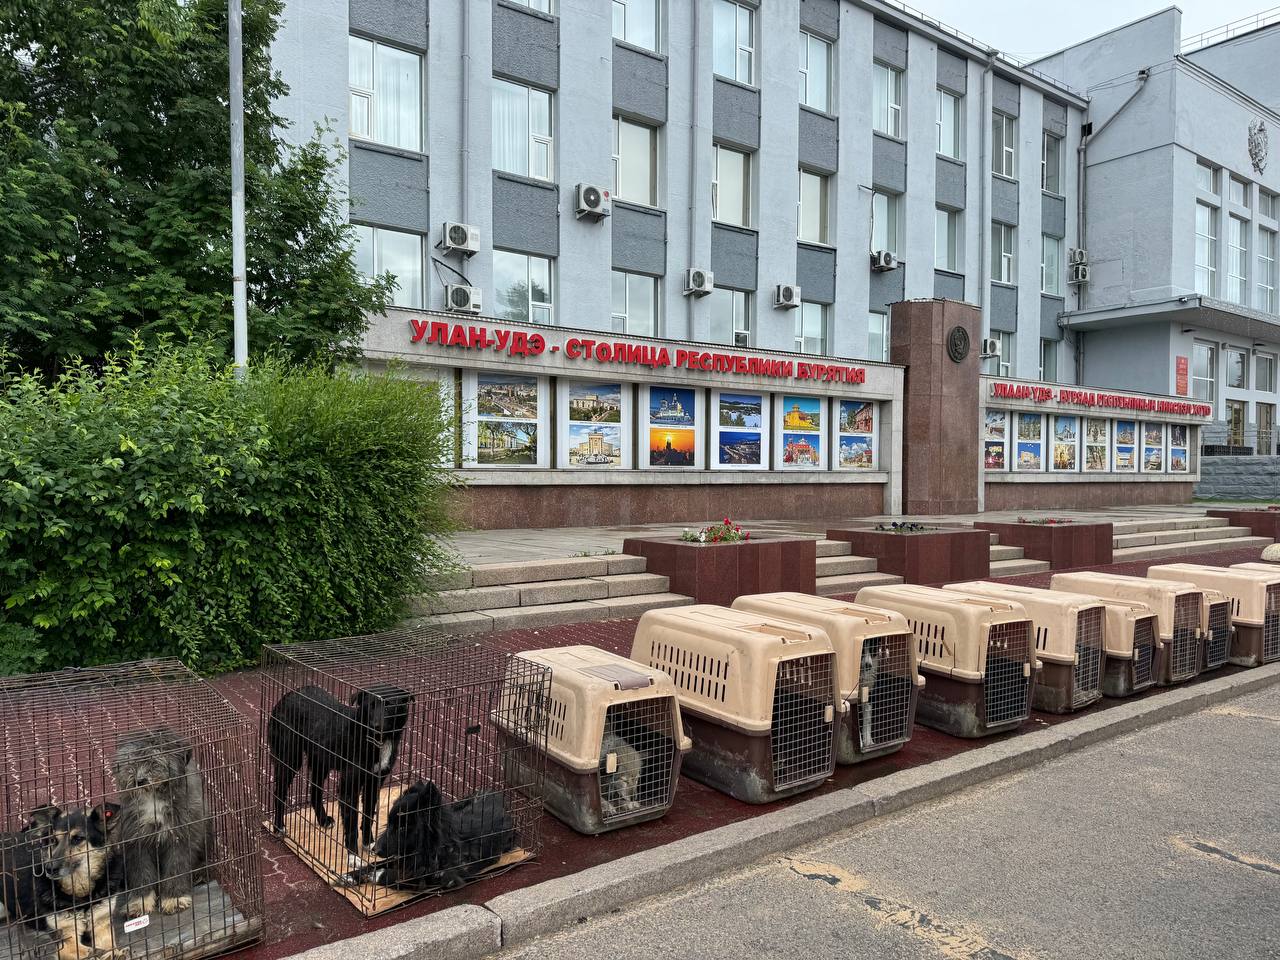 Служба отлова привезла клетки с собаками к администрации Улан-Удэ и пригрозила их выпустить из-за нехватки денег на содержание